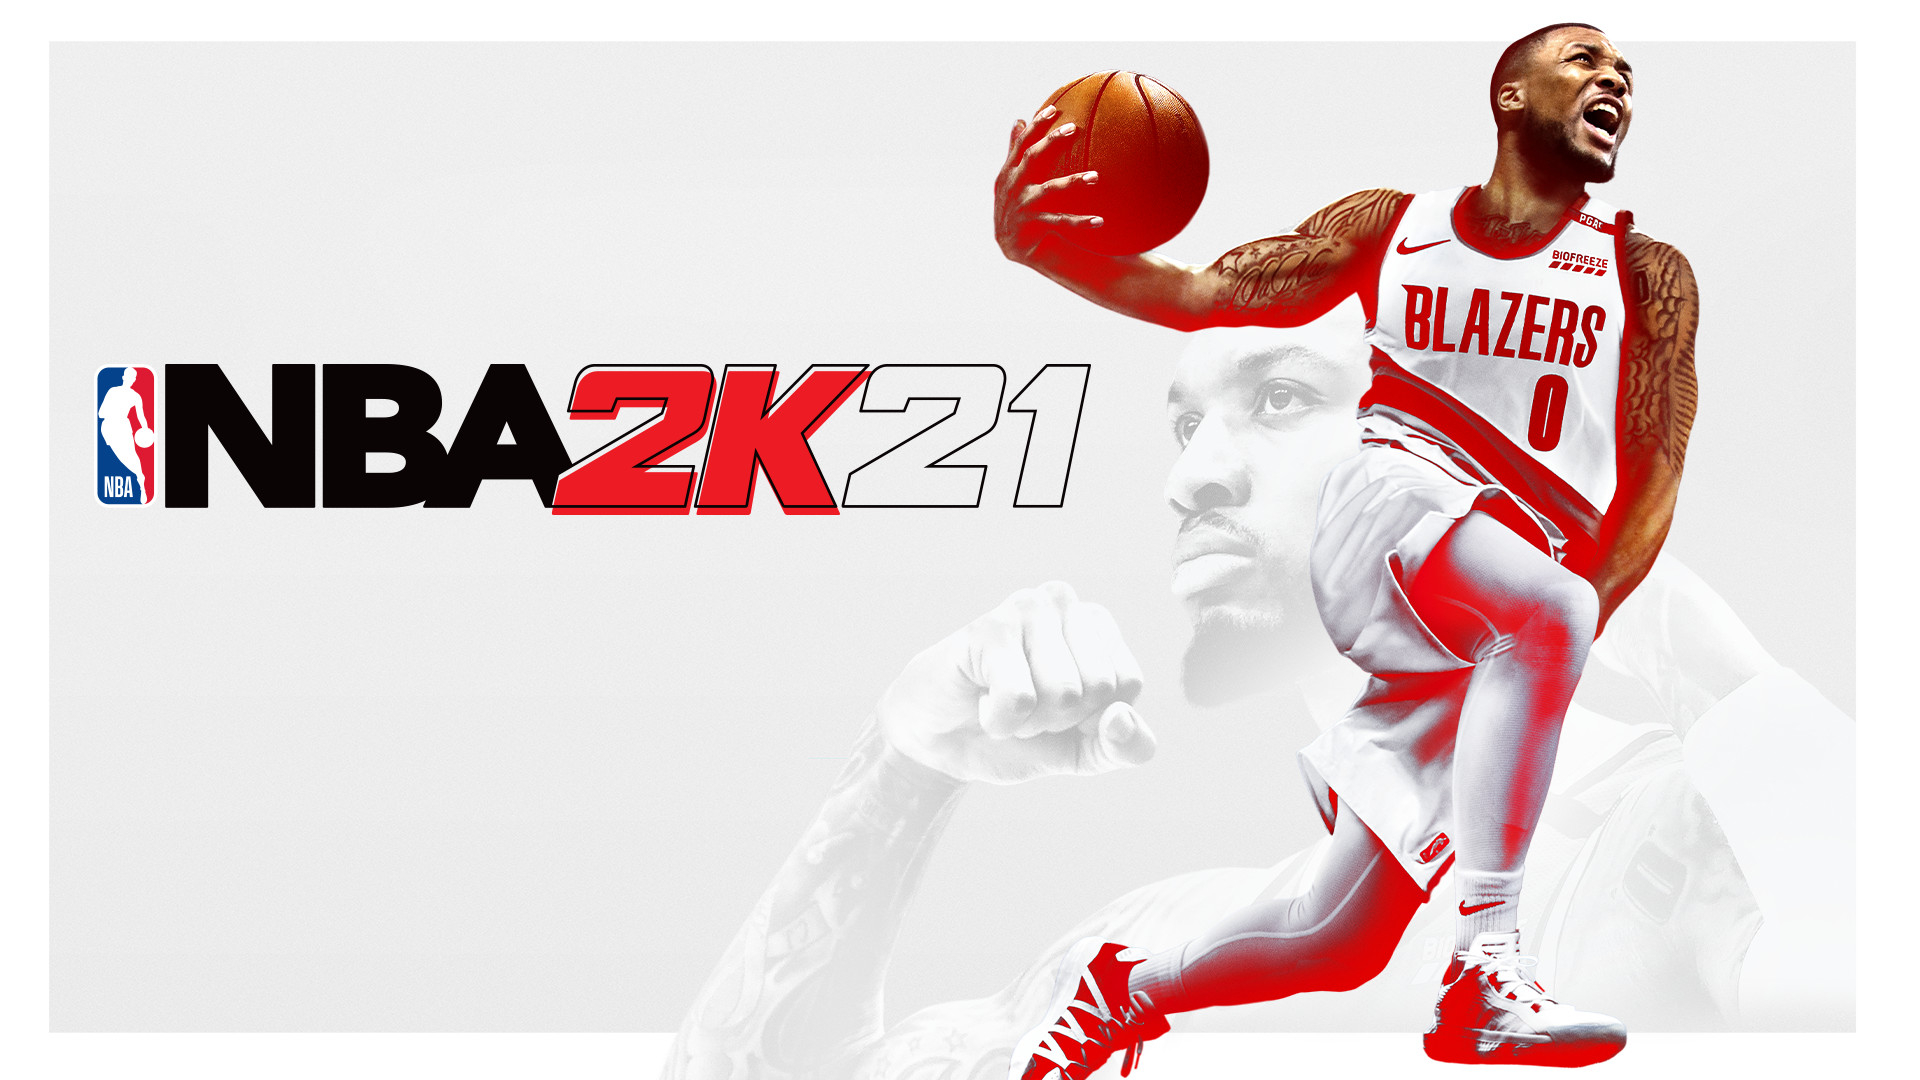 NBA 2K21 (steam key) -- RU